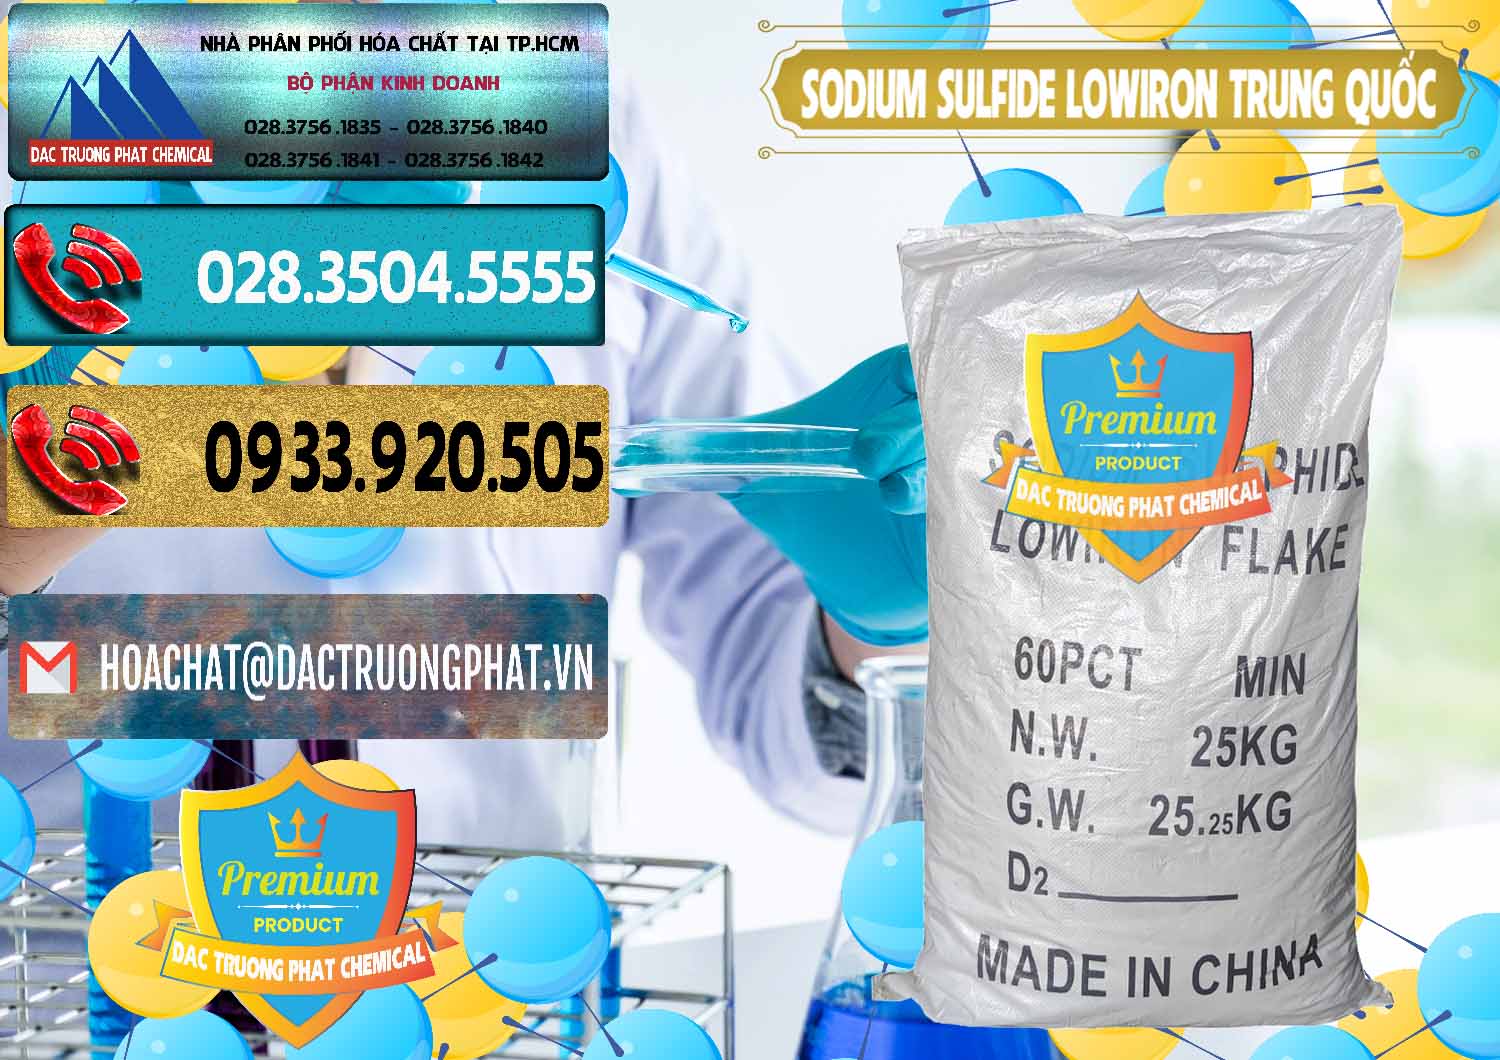 Cty chuyên kinh doanh và bán Sodium Sulfide NA2S – Đá Thối Lowiron Trung Quốc China - 0227 - Đơn vị chuyên phân phối & nhập khẩu hóa chất tại TP.HCM - hoachatdetnhuom.com